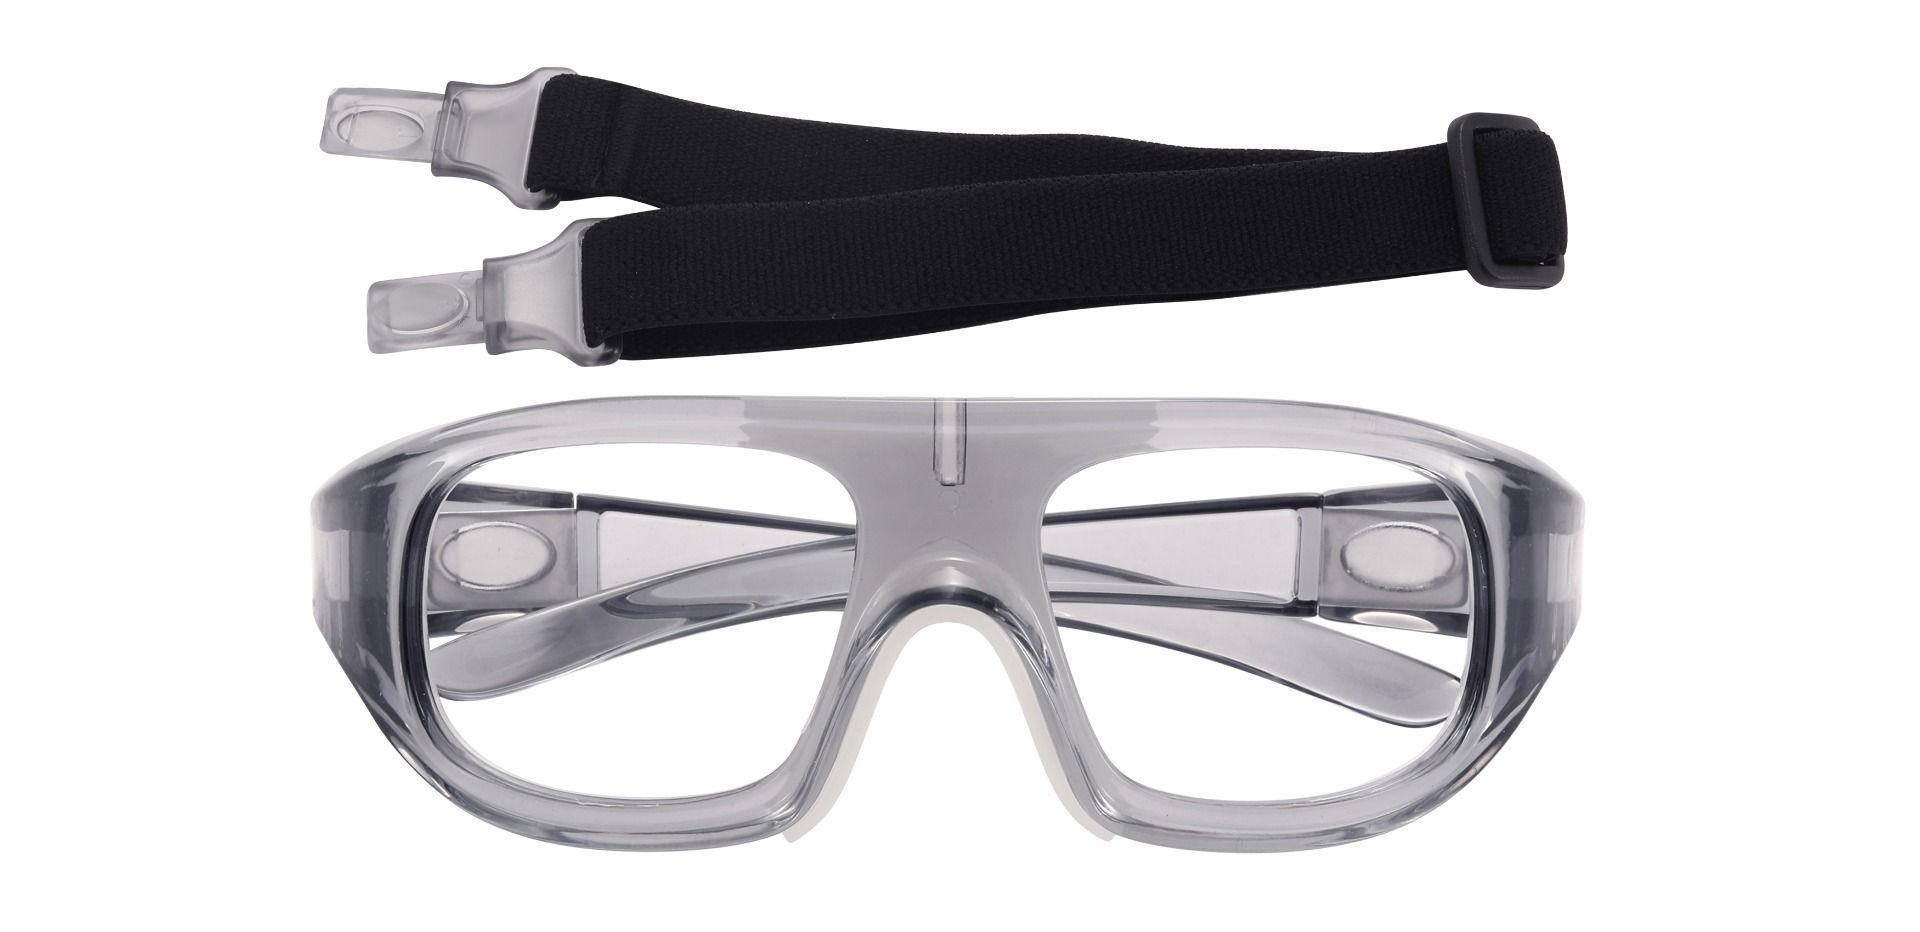 Charter Sports Goggles Prescription Glasses - Gray